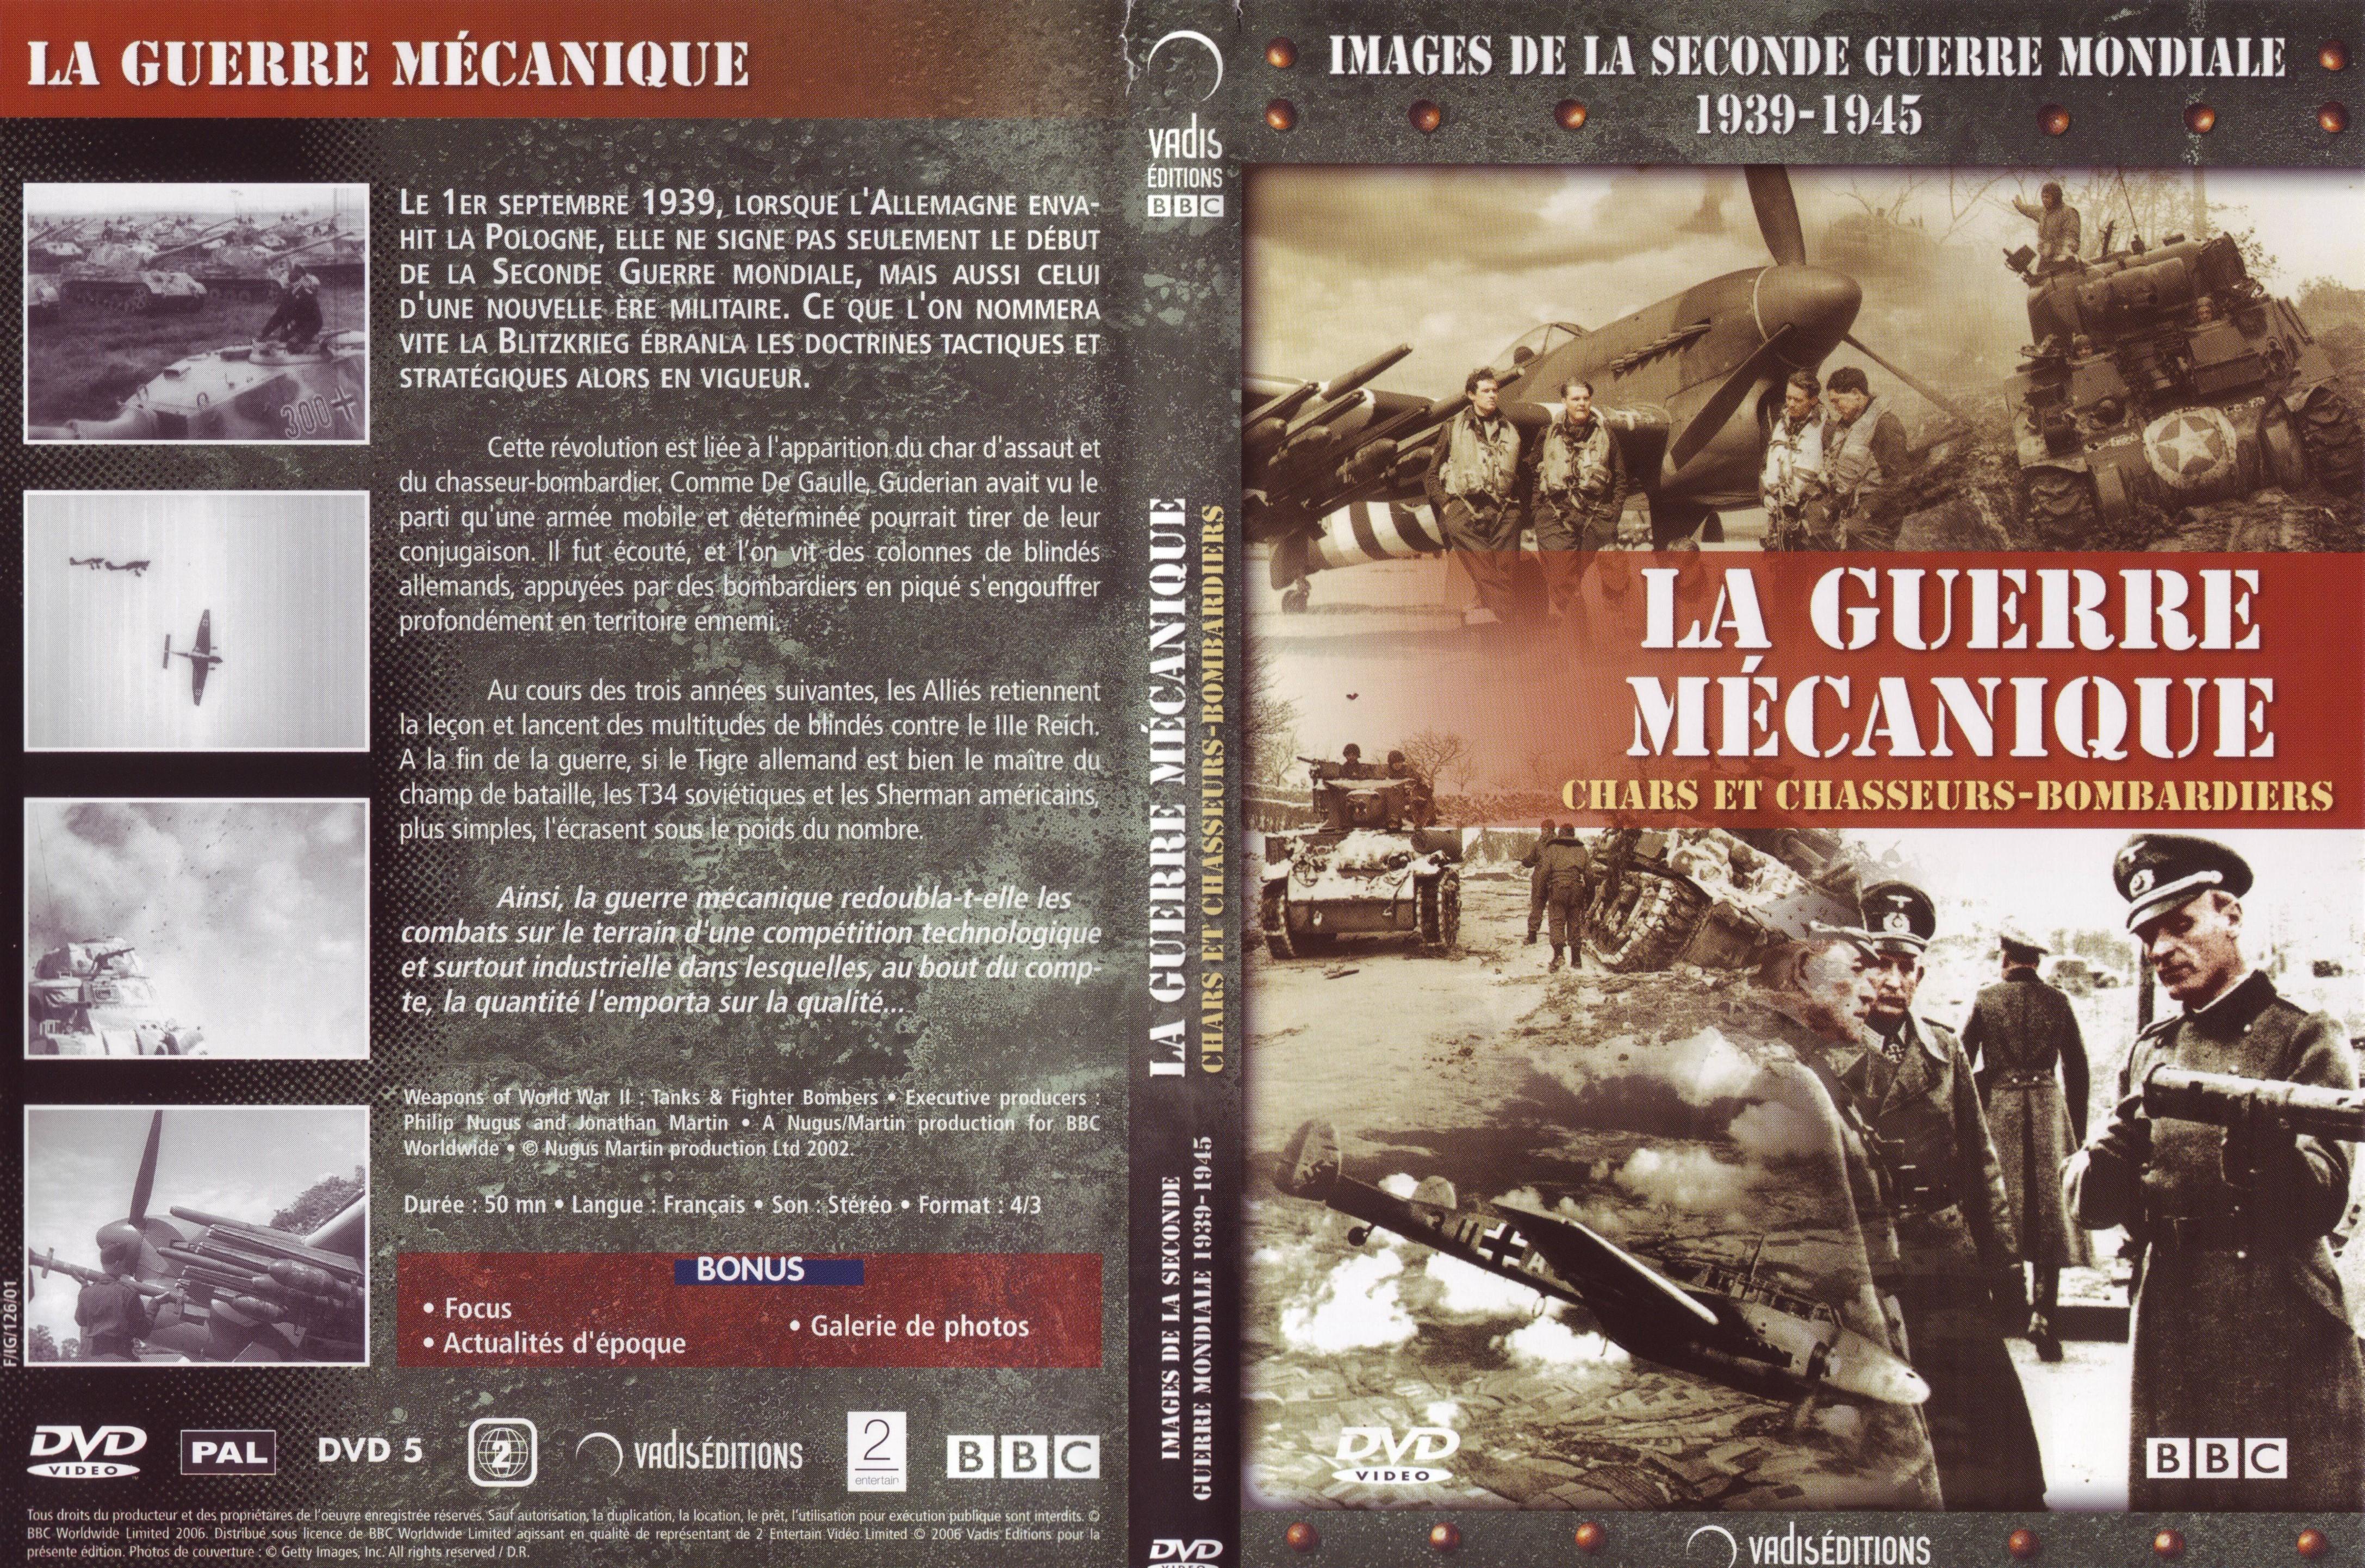 Jaquette DVD Images de la seconde guerre mondiale - La guerre mcanique